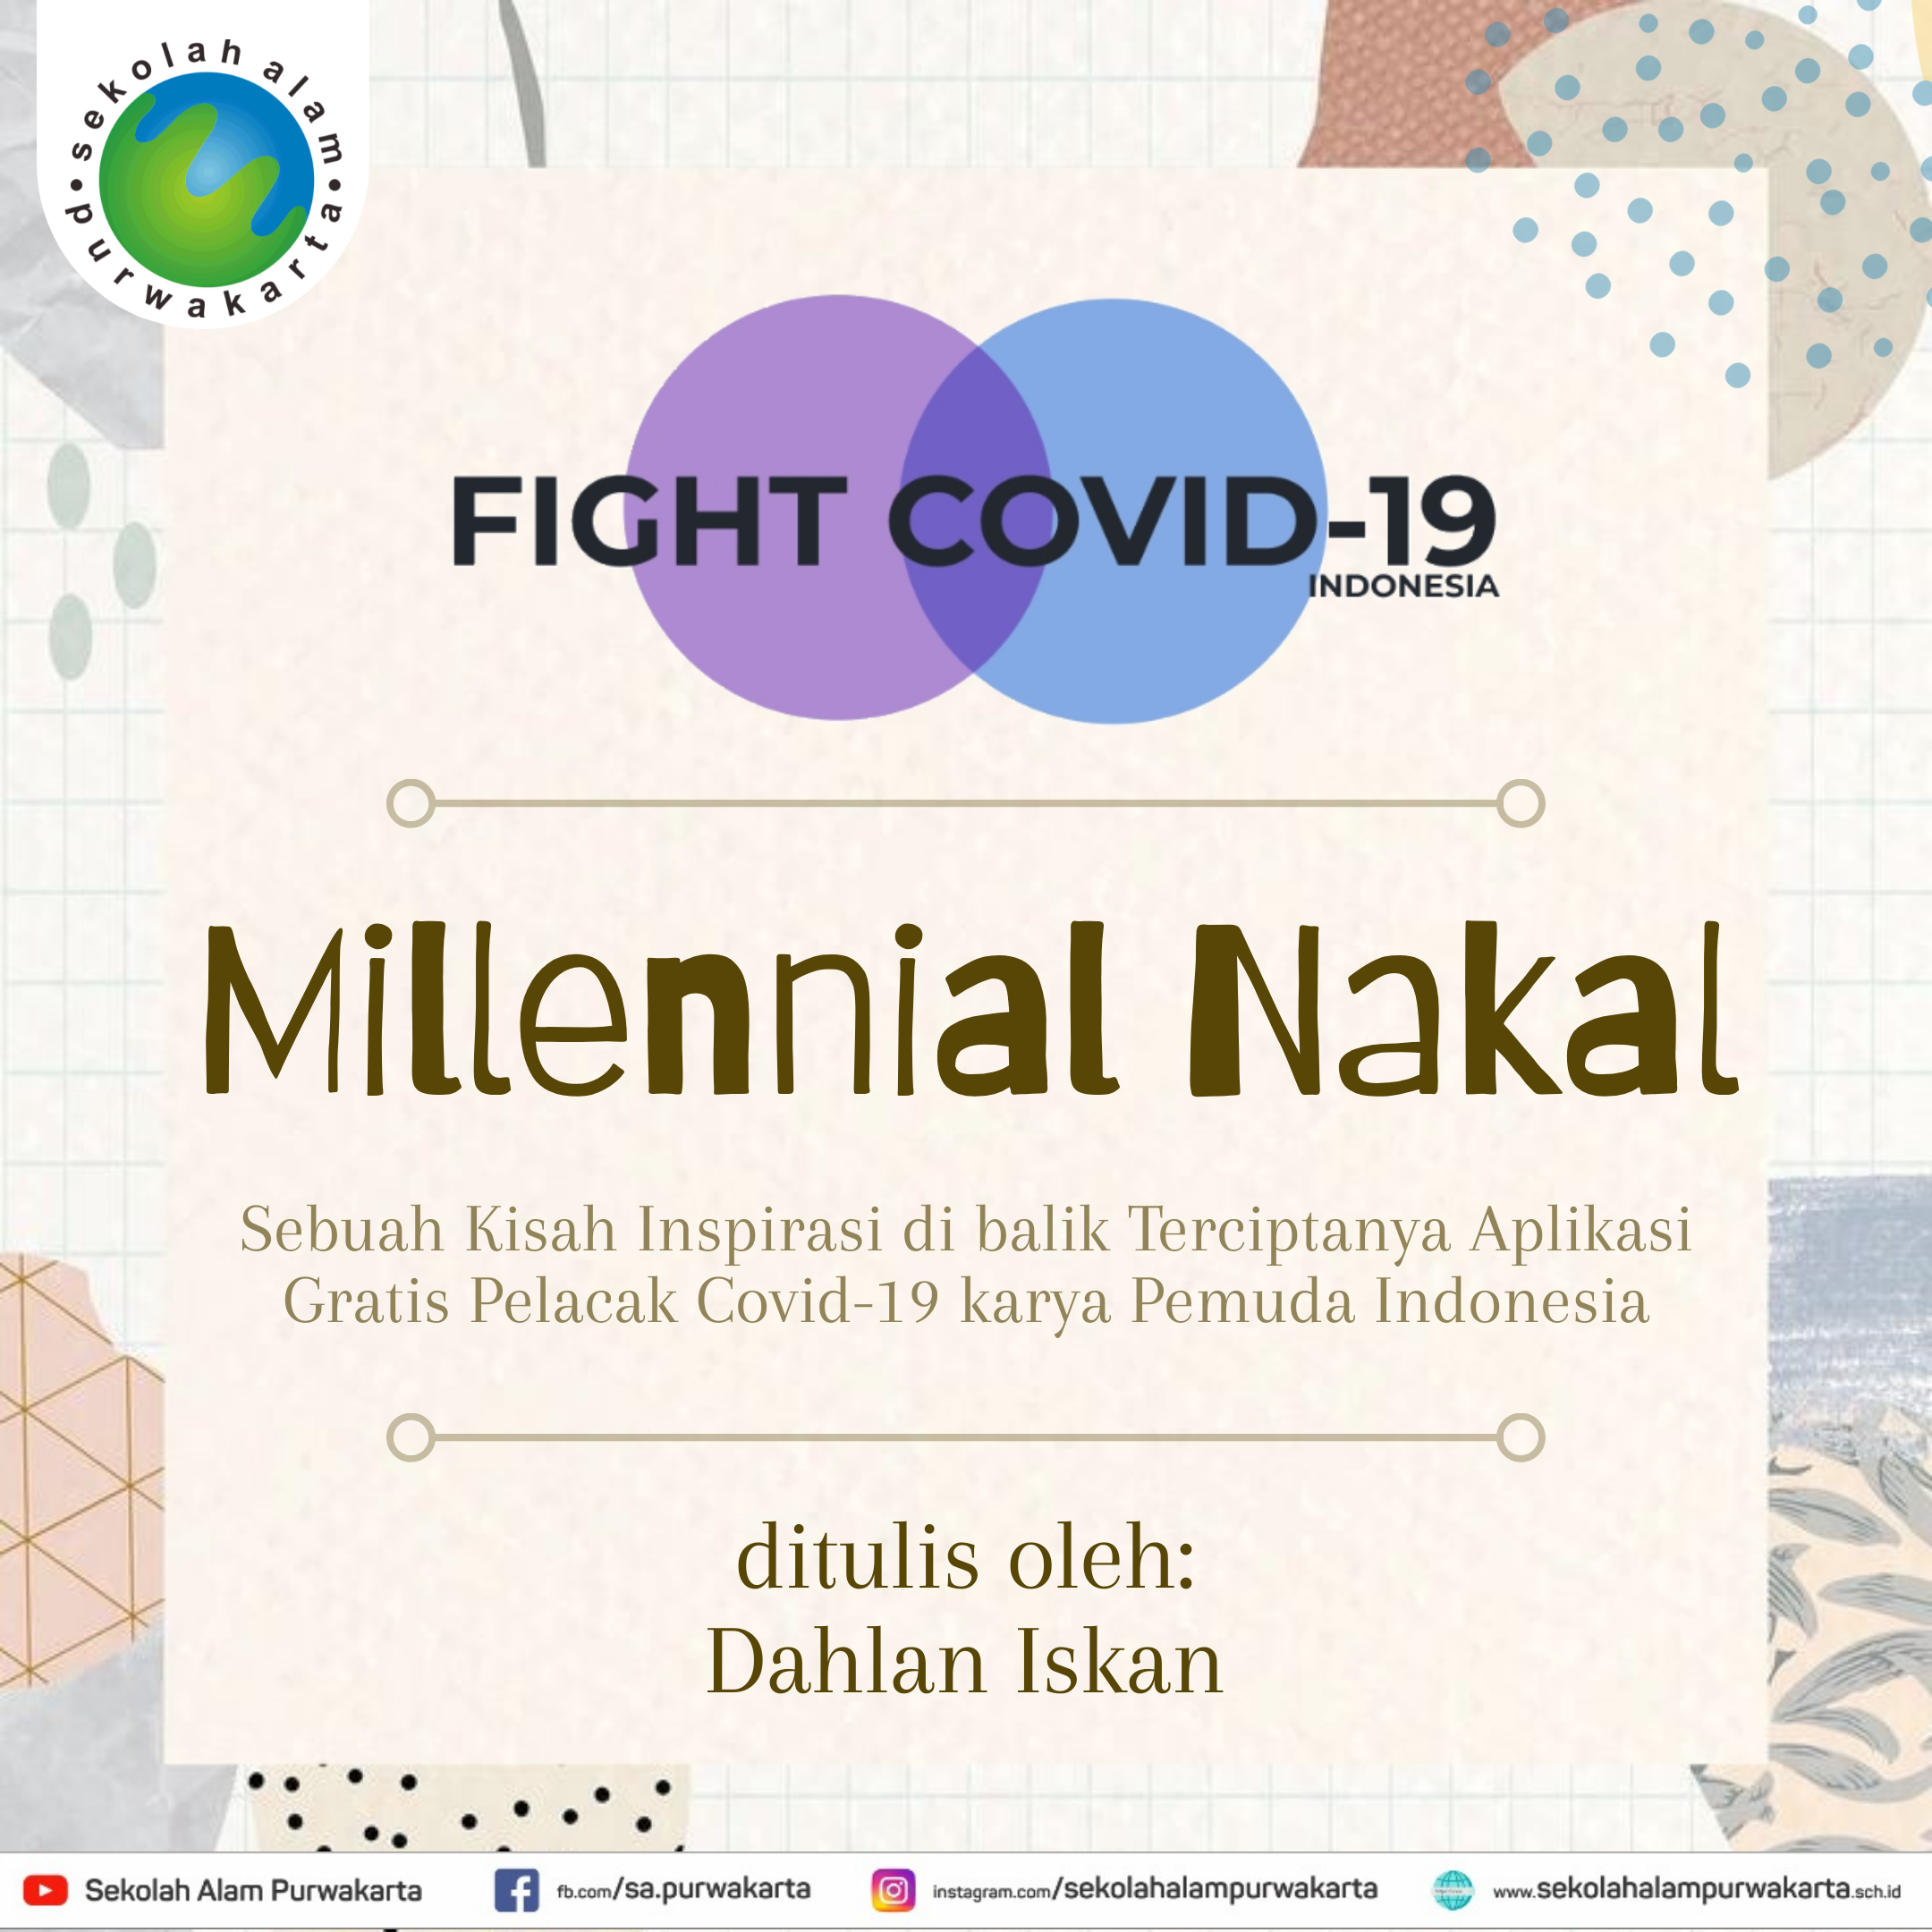 Millennial Nakal – sebuah kisah inspiratif pemuda Indonesia yang menciptakan  karya aplikasi gratis pelacak covid 19